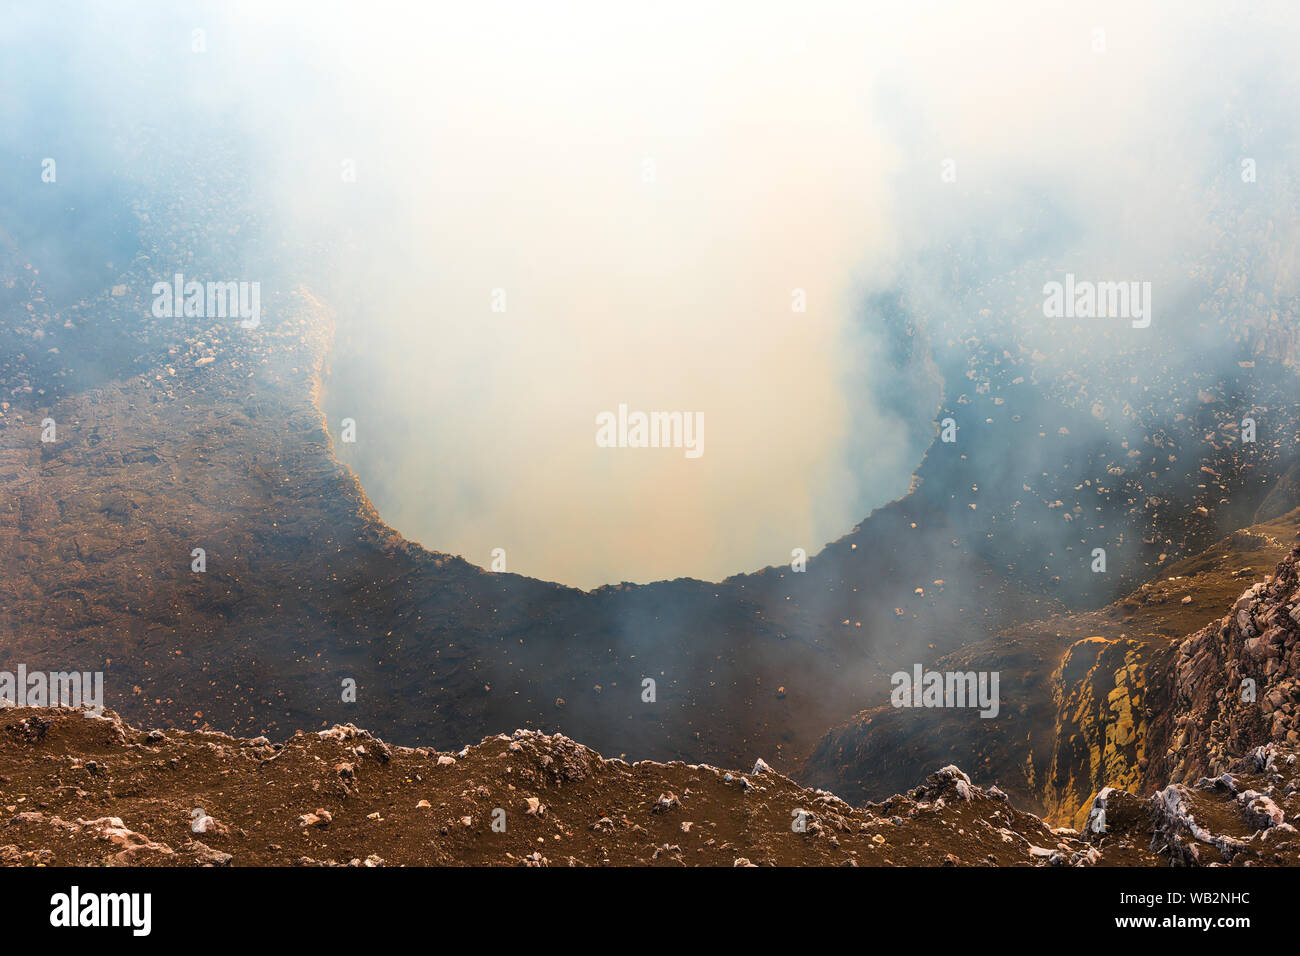 Il vulcanico attivo cratere del Vulcano Masaya con le sue emissioni di gas (anidride solforosa) al tramonto si trova tra Managua e Granada, Nicaragua. Foto Stock